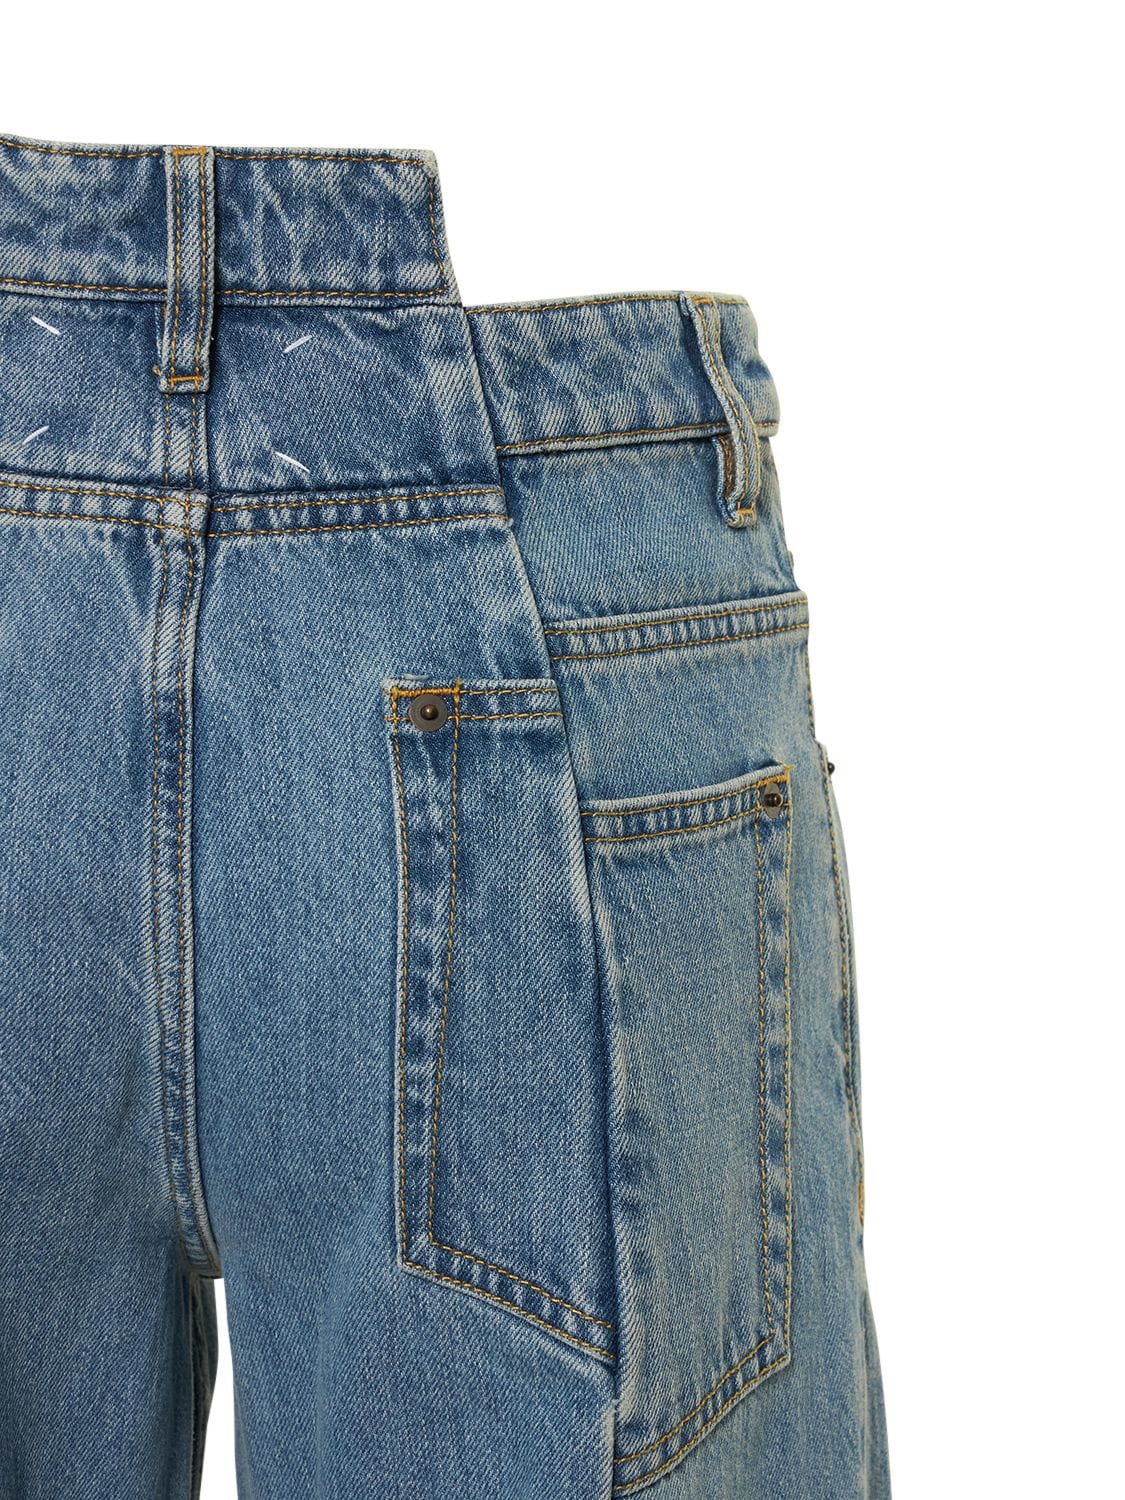 Shop Maison Margiela Asymmetric Wide Leg Cotton Denim Jeans